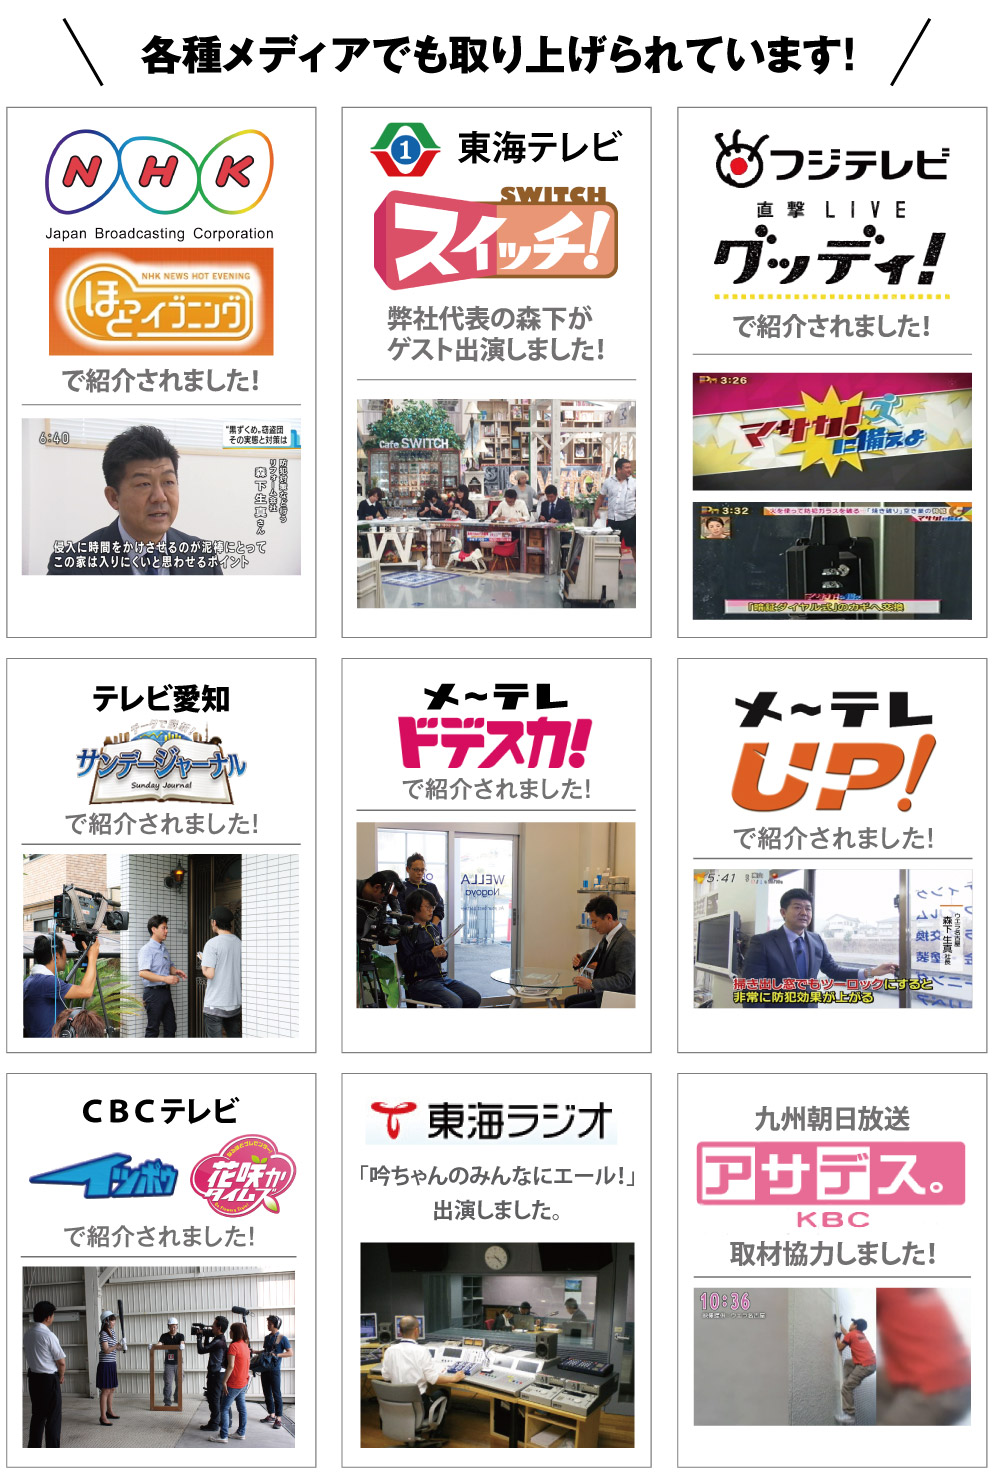 ウエラ名古屋は、各種メディアで取り上げられています。